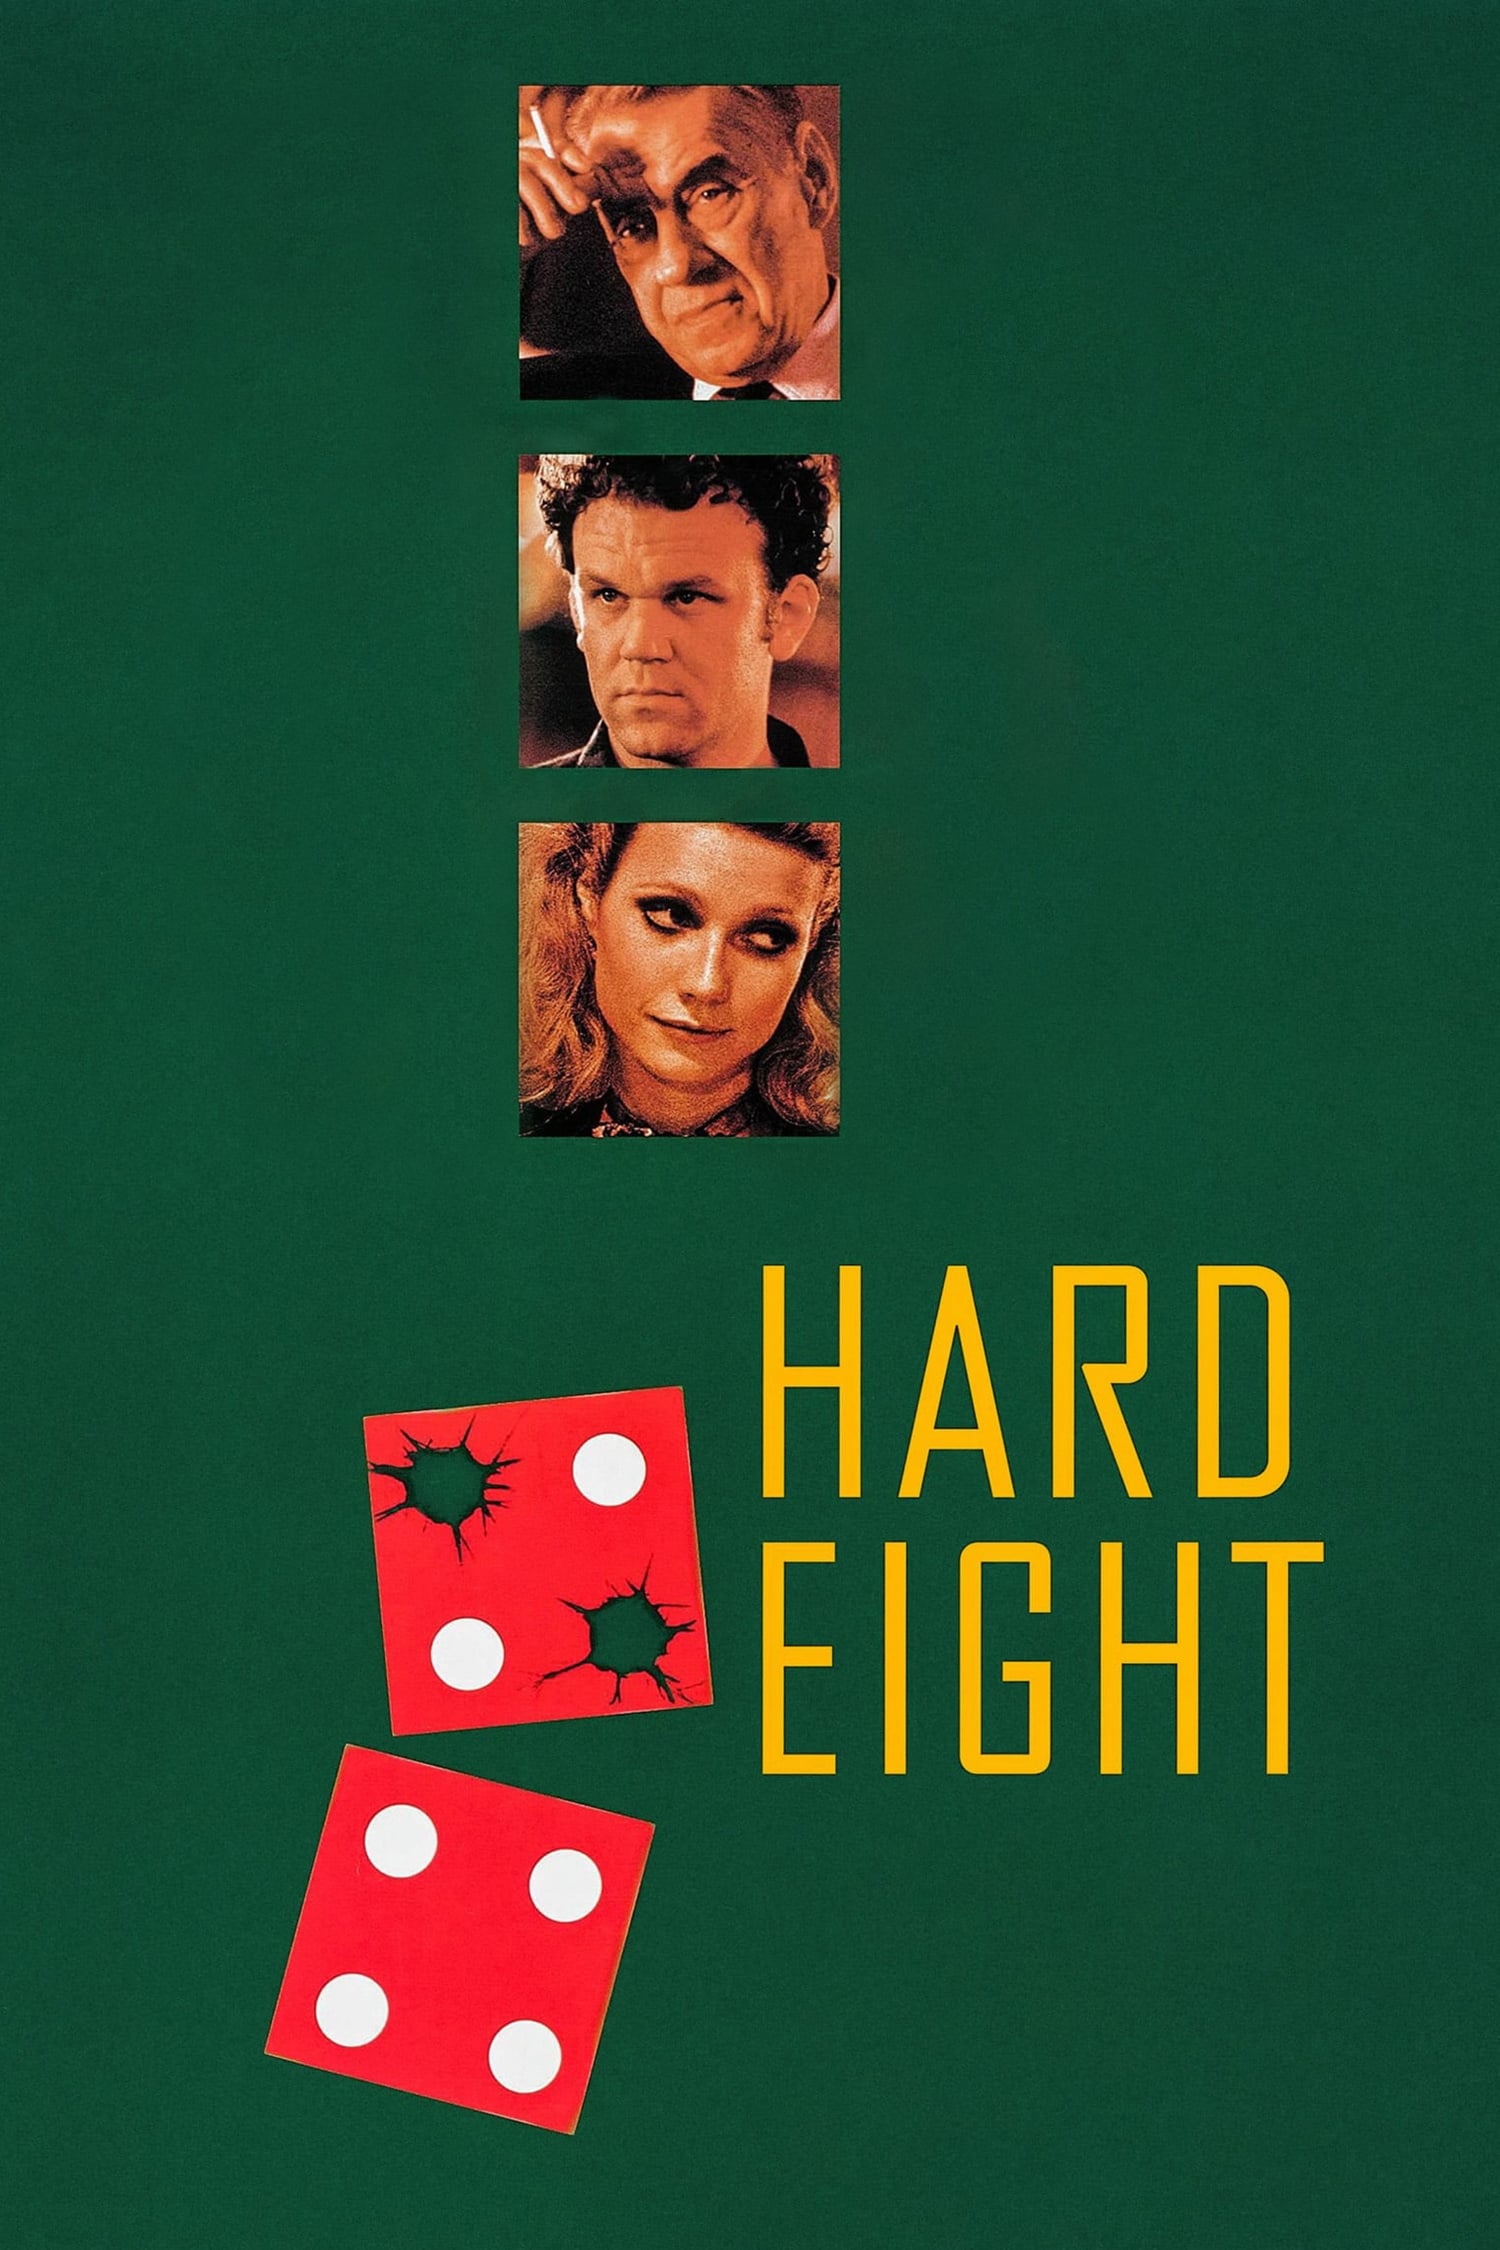 Hard Eight (1997)